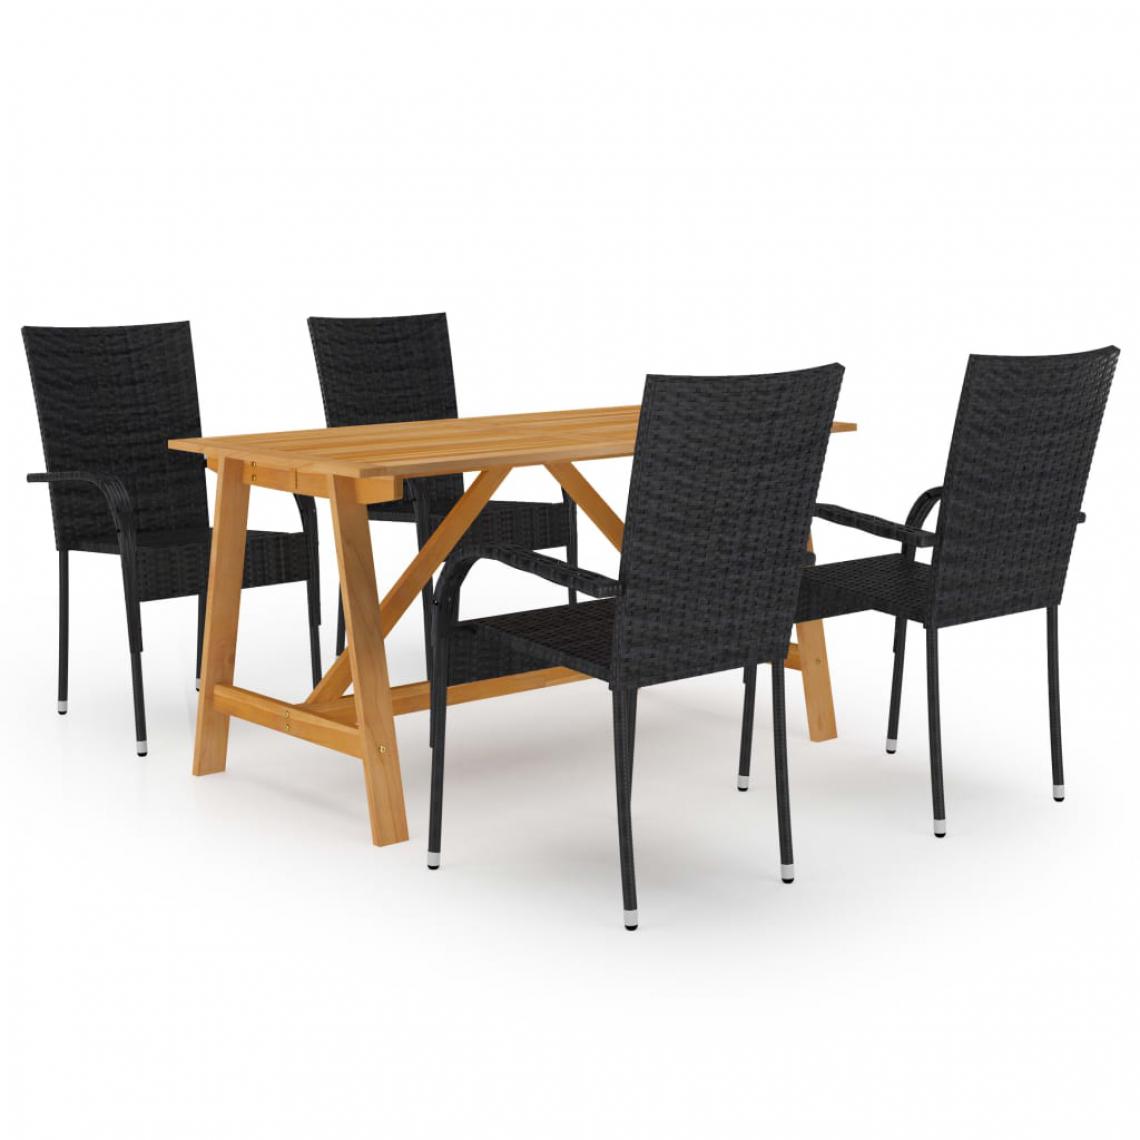 Chunhelife - Ensemble de salle à manger de jardin 5 pcs Noir - Ensembles canapés et fauteuils